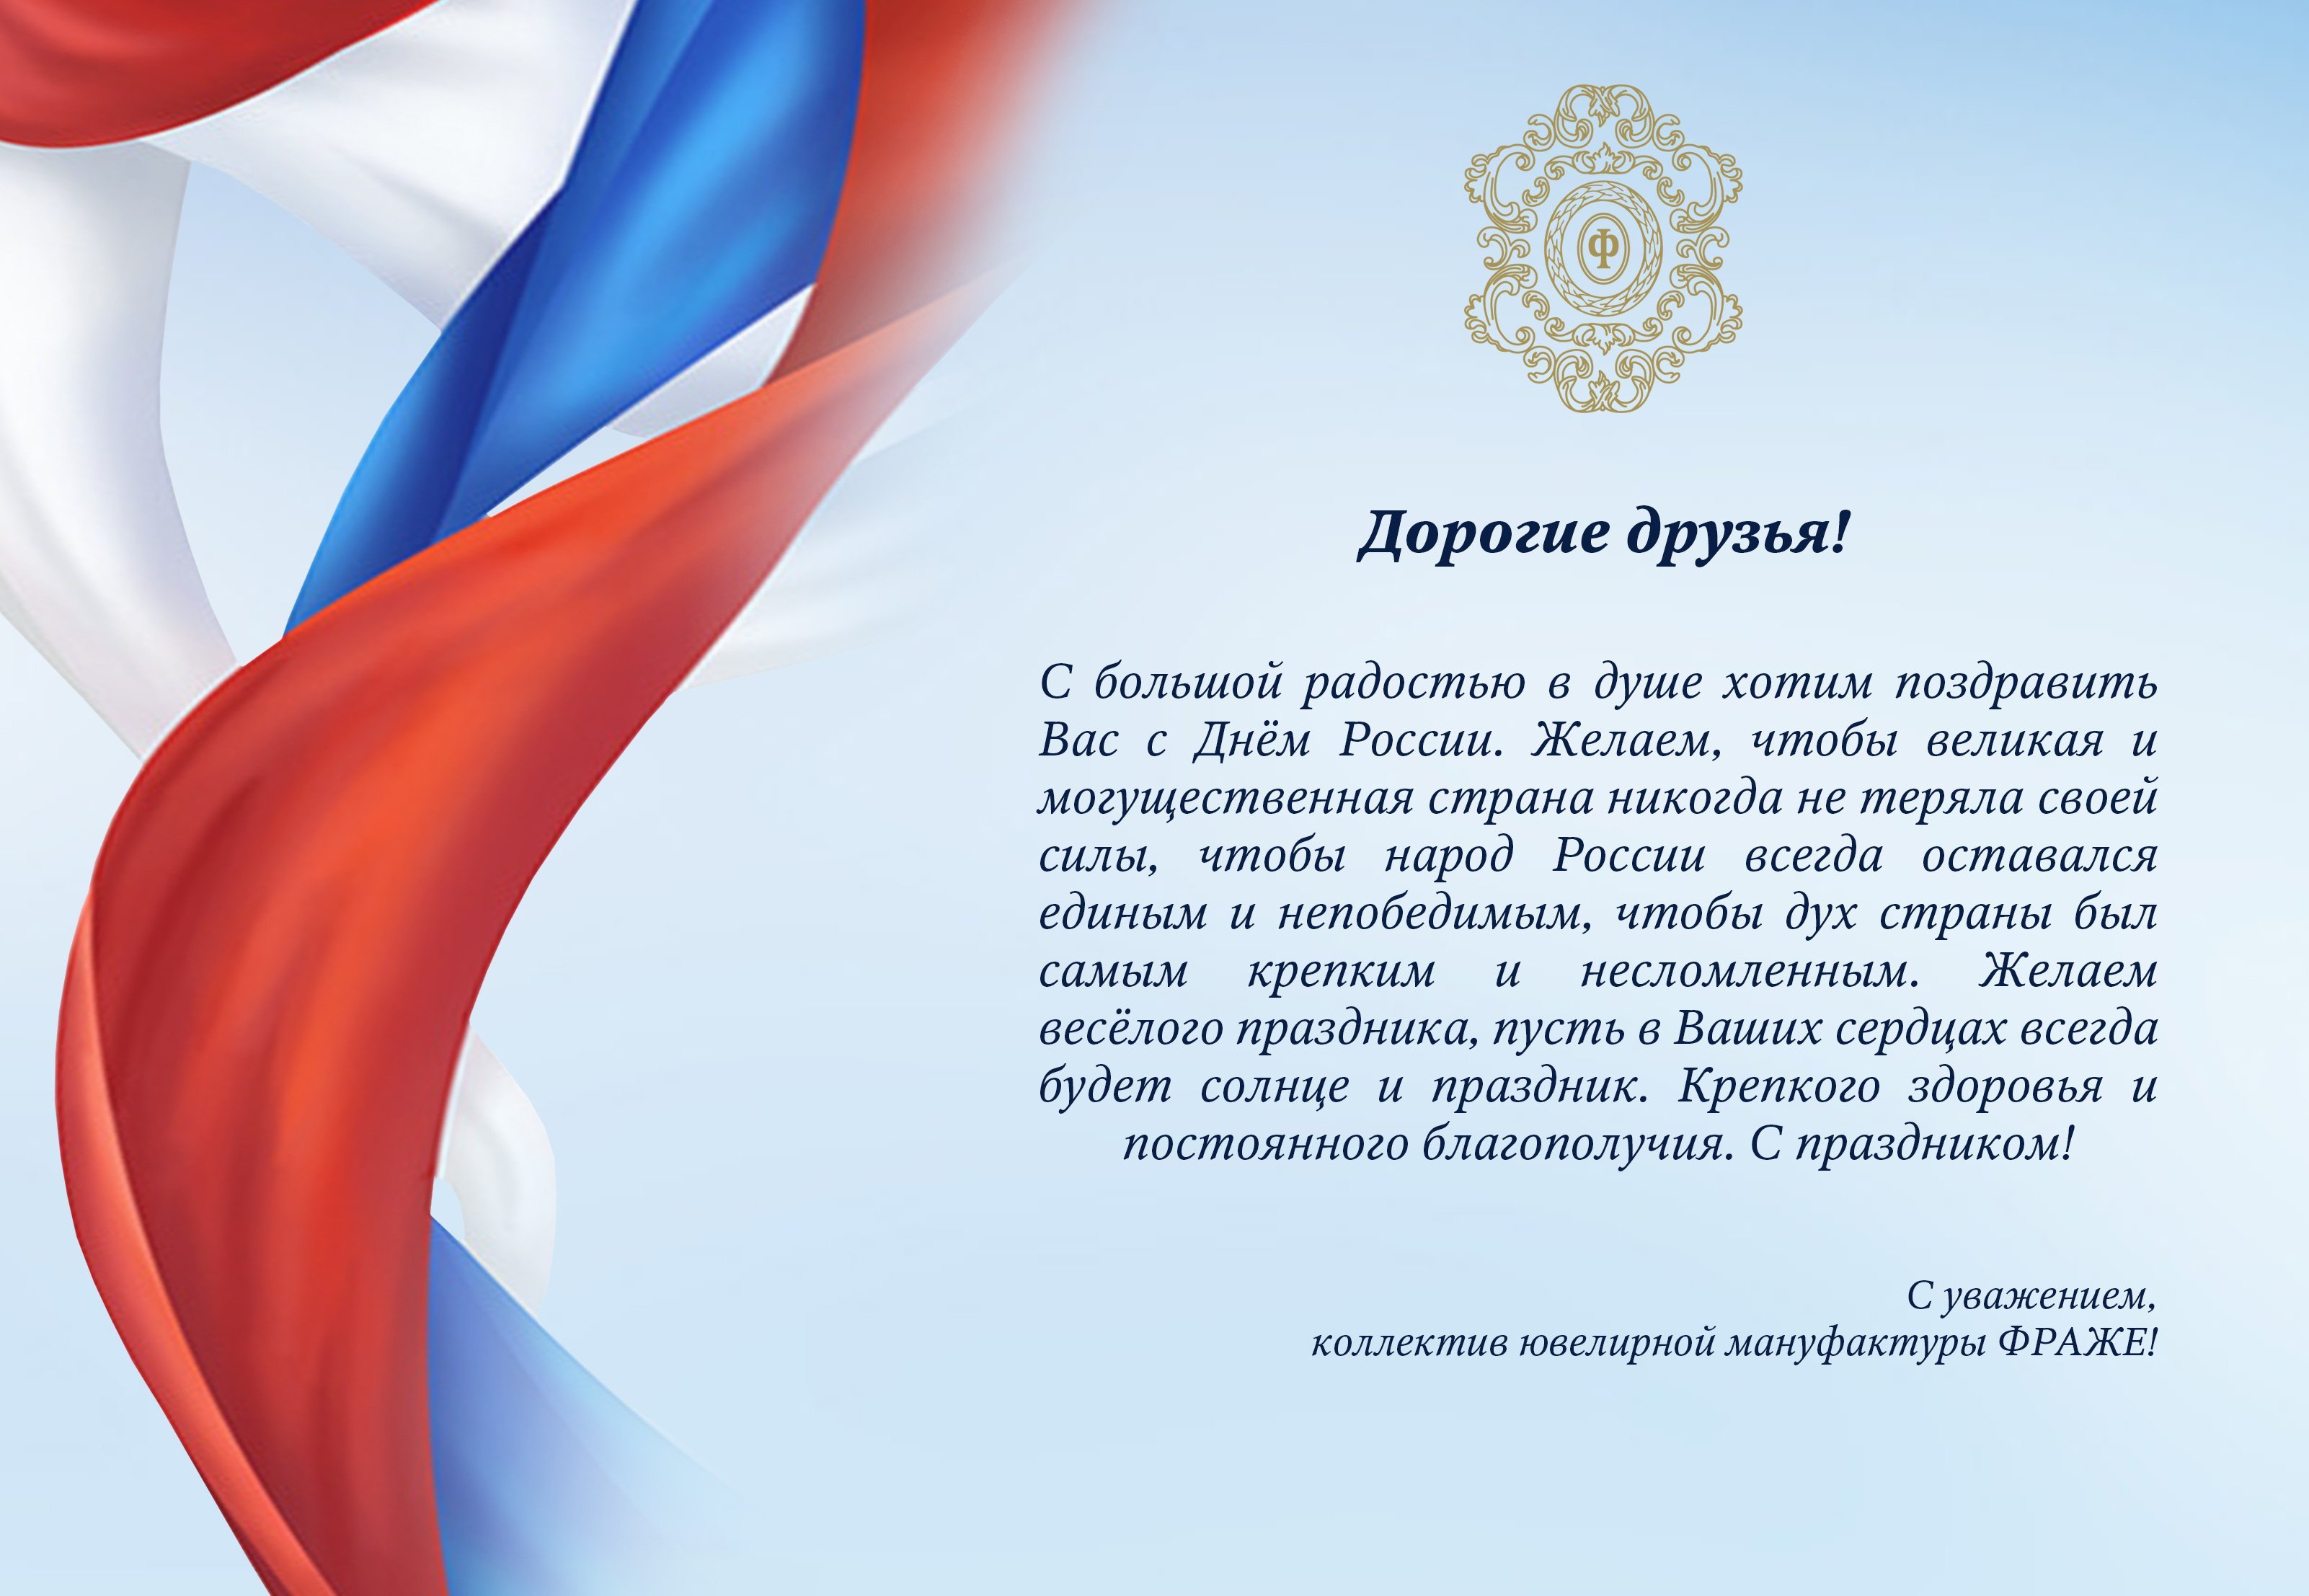 Поздравление с днем россии официальное. Фон для официального поздравления. Официальная открытка. С днем независимости России официальное поздравление.